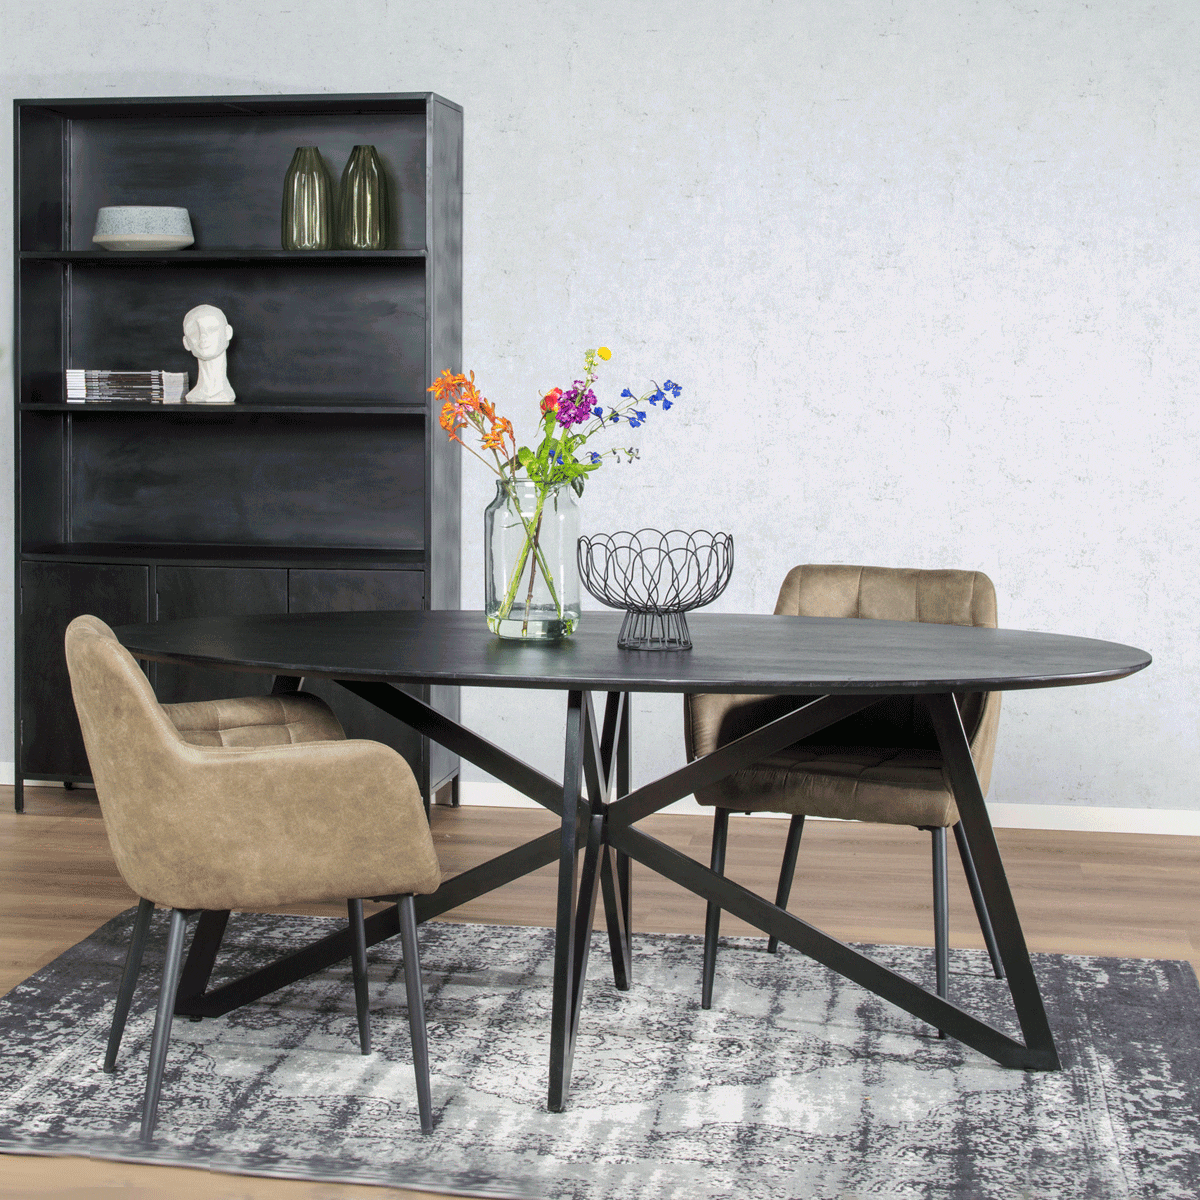 Livingfurn Ovale Eettafel 'Oslo' Mangohout en staal, kleur Zwart, 200 x 100cm